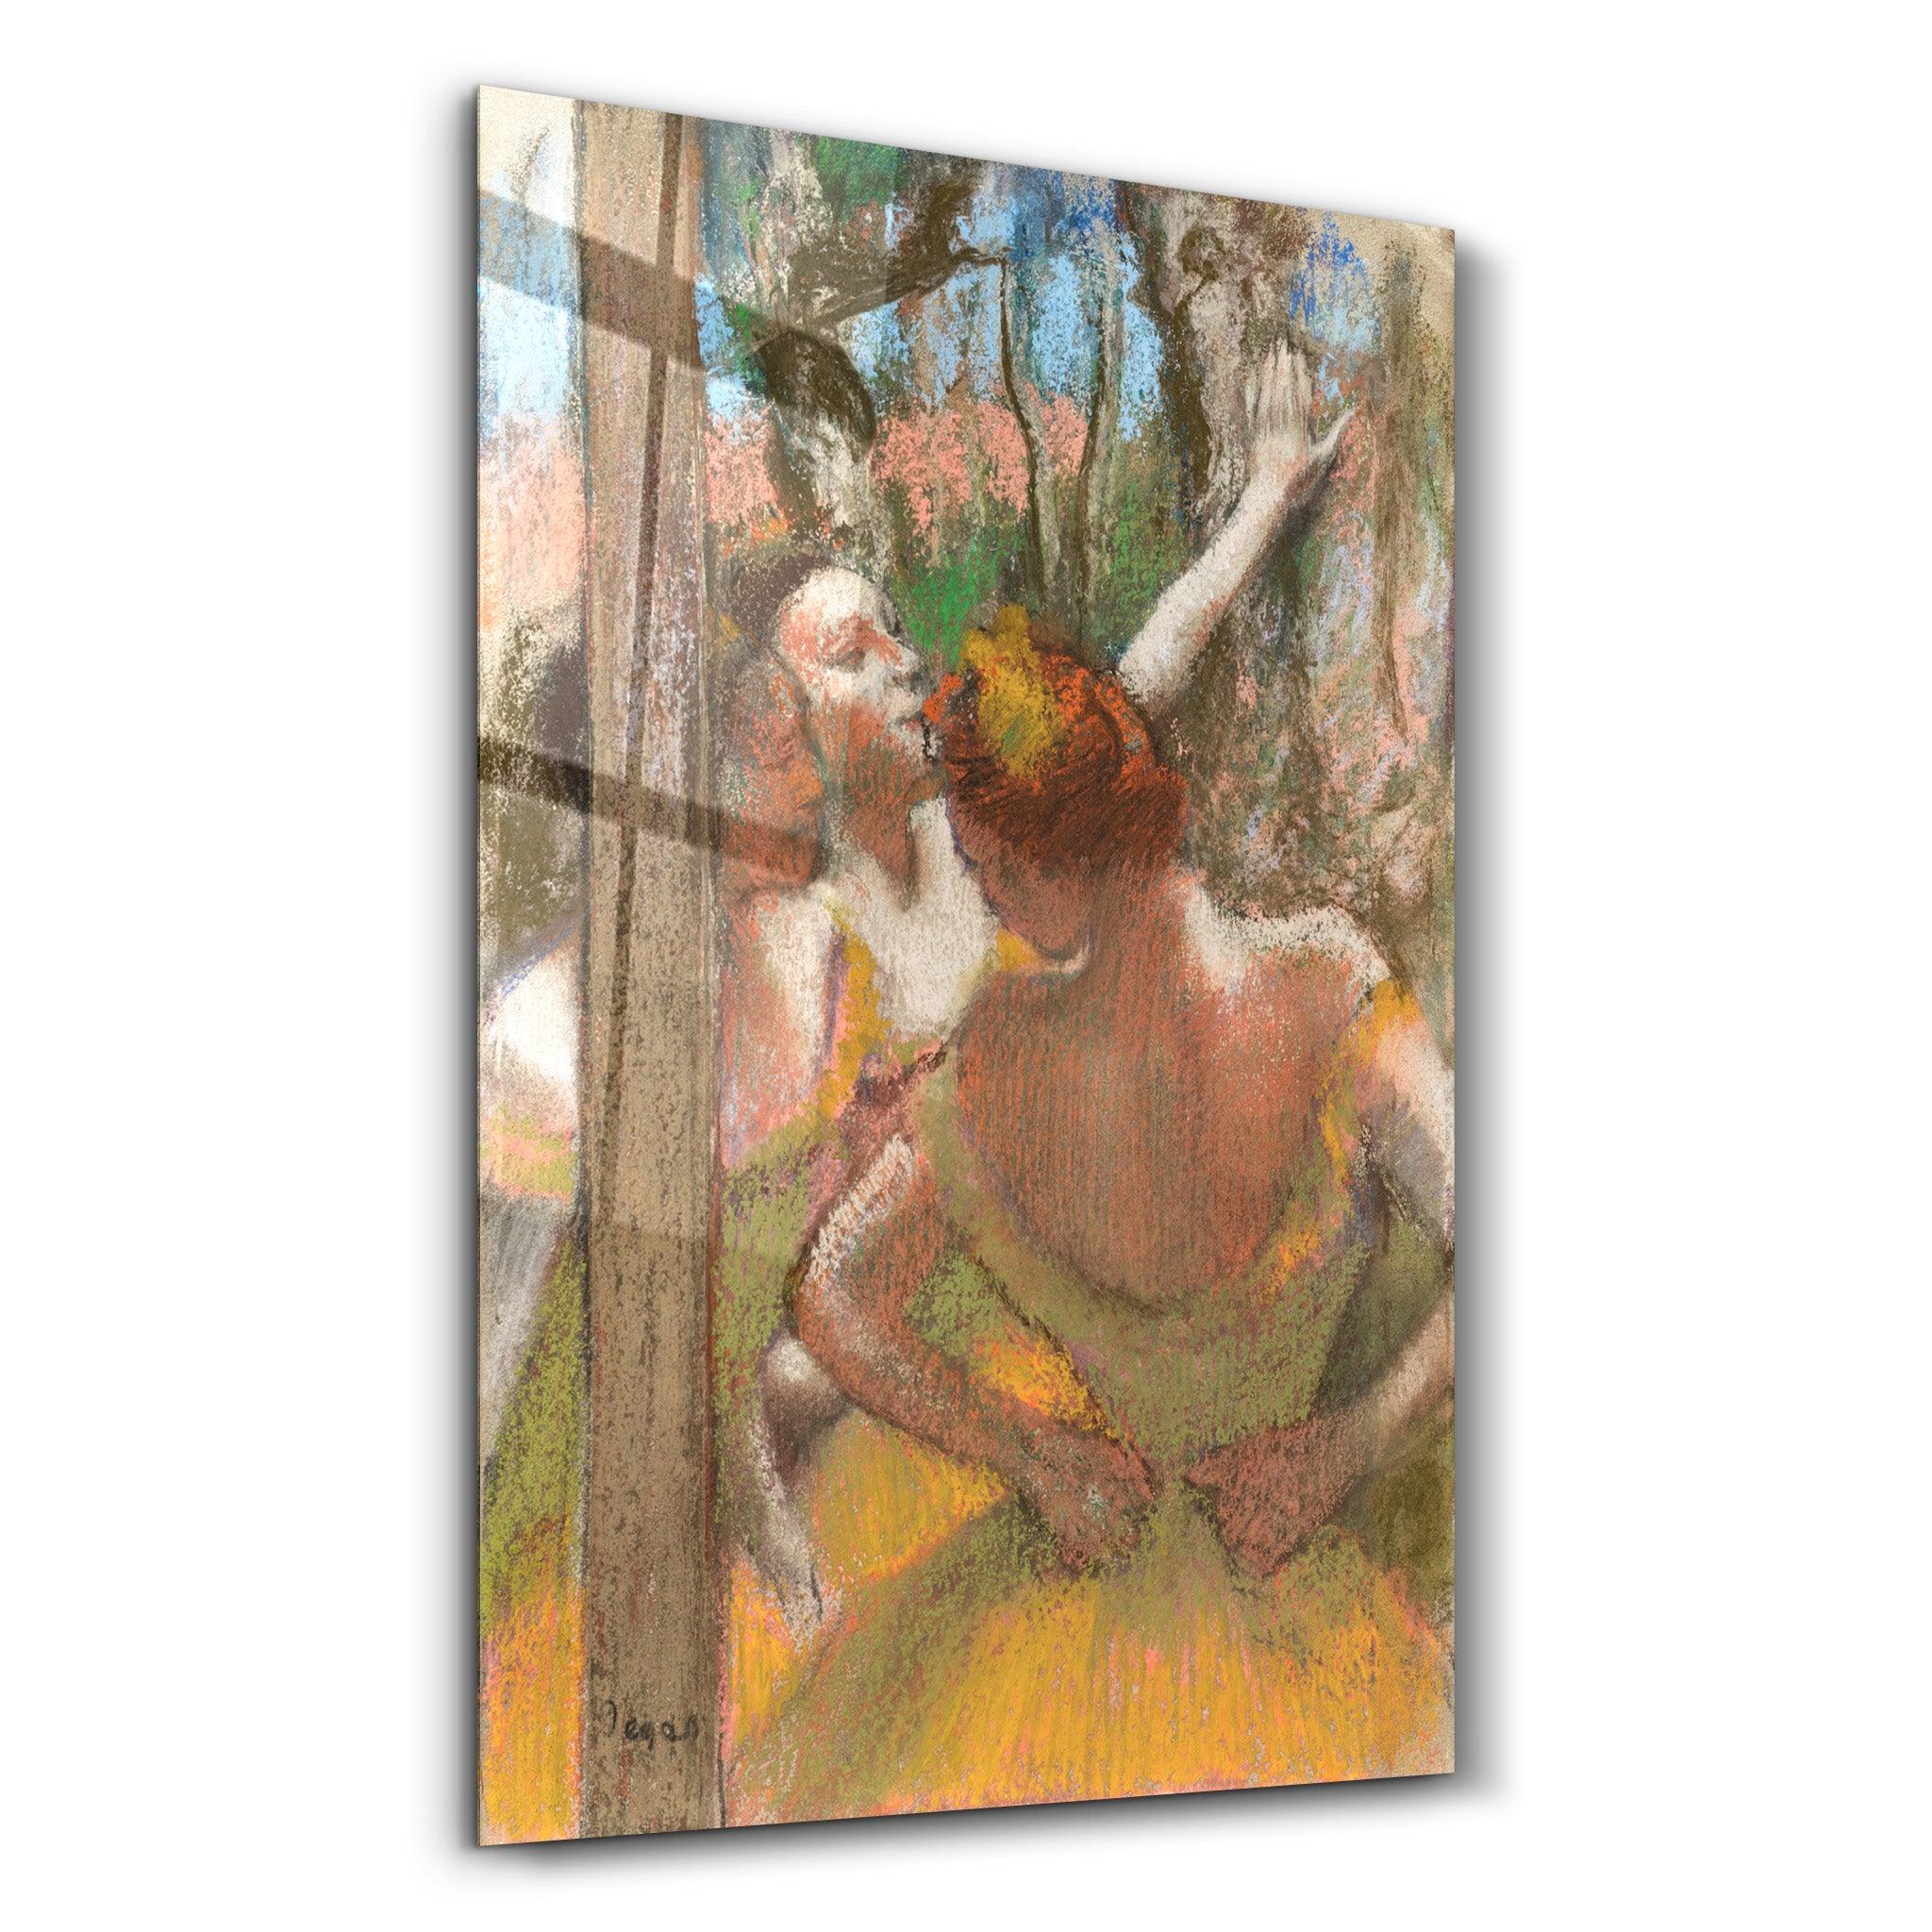 Dancers (1896) Edgar Degas. | Glass Wall Art - ArtDesigna Glass Printing Wall Art